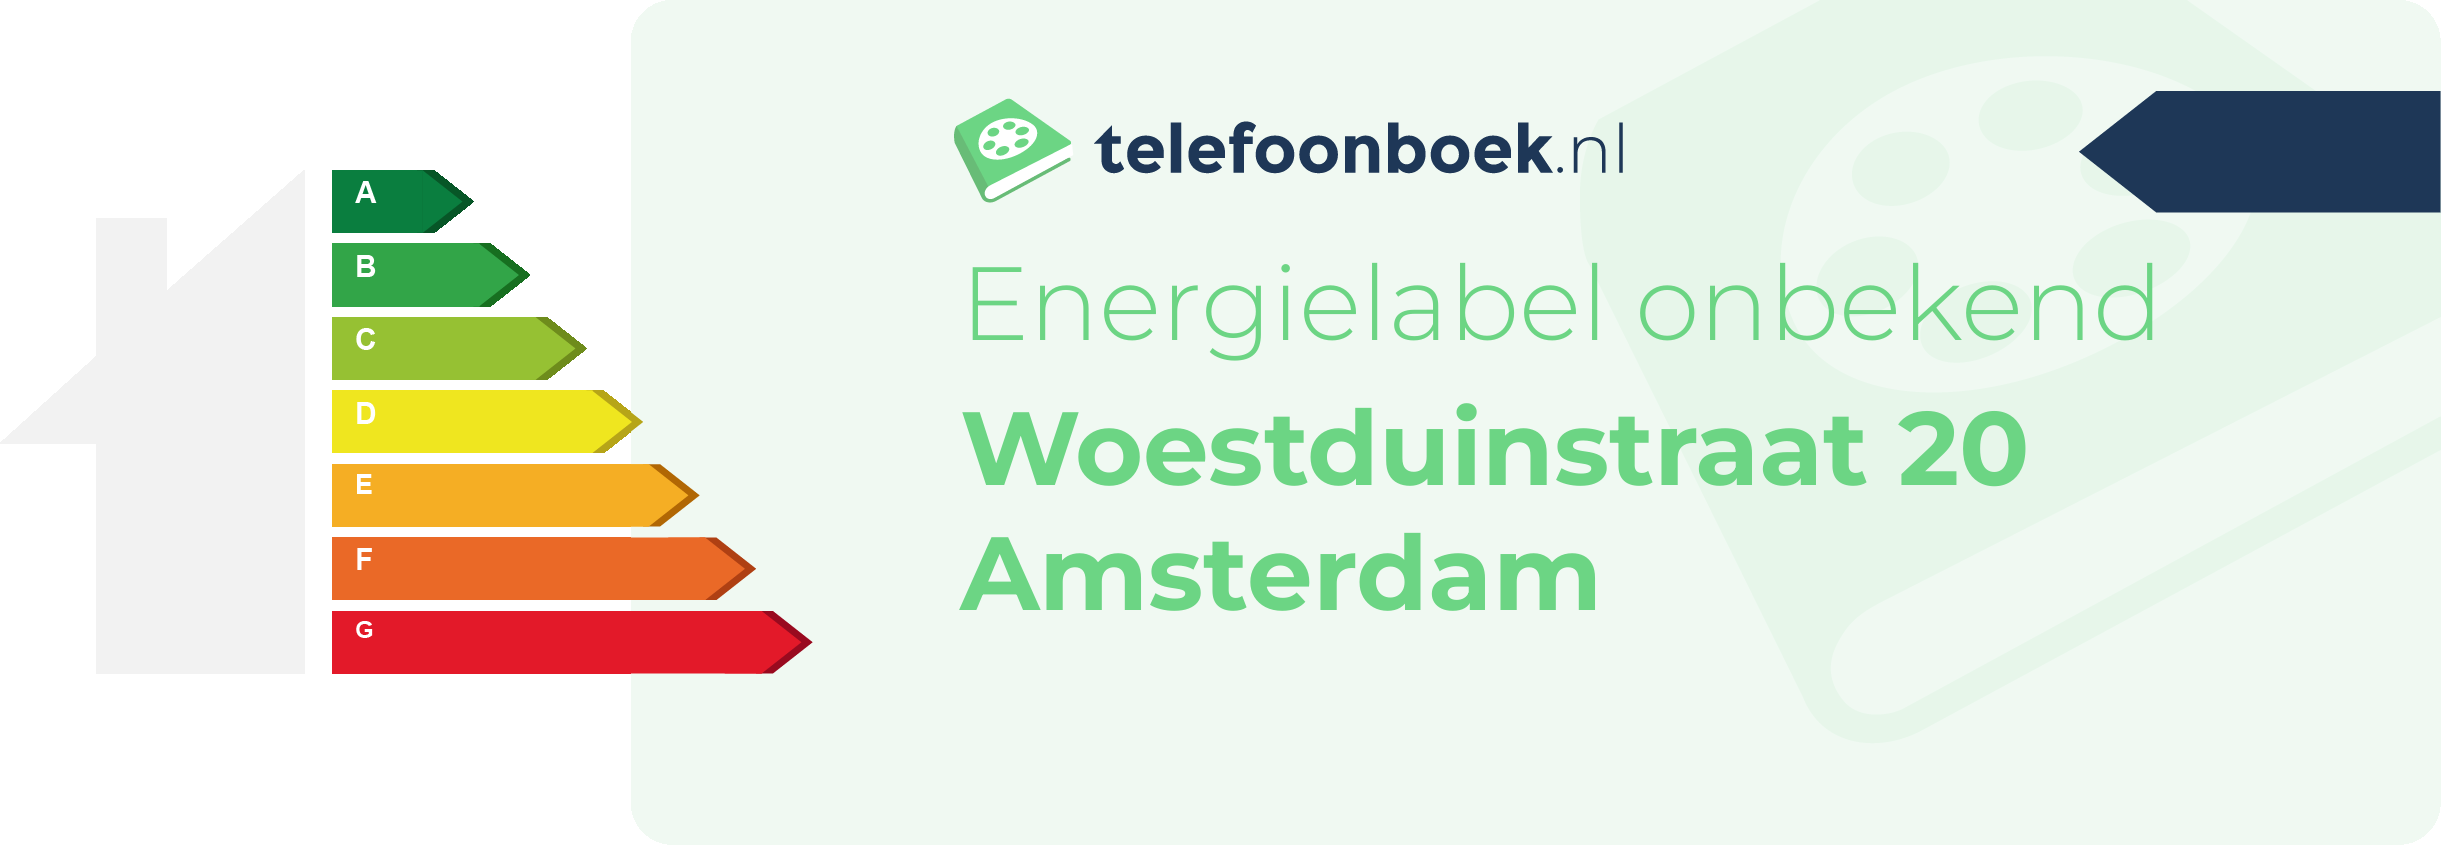 Energielabel Woestduinstraat 20 Amsterdam